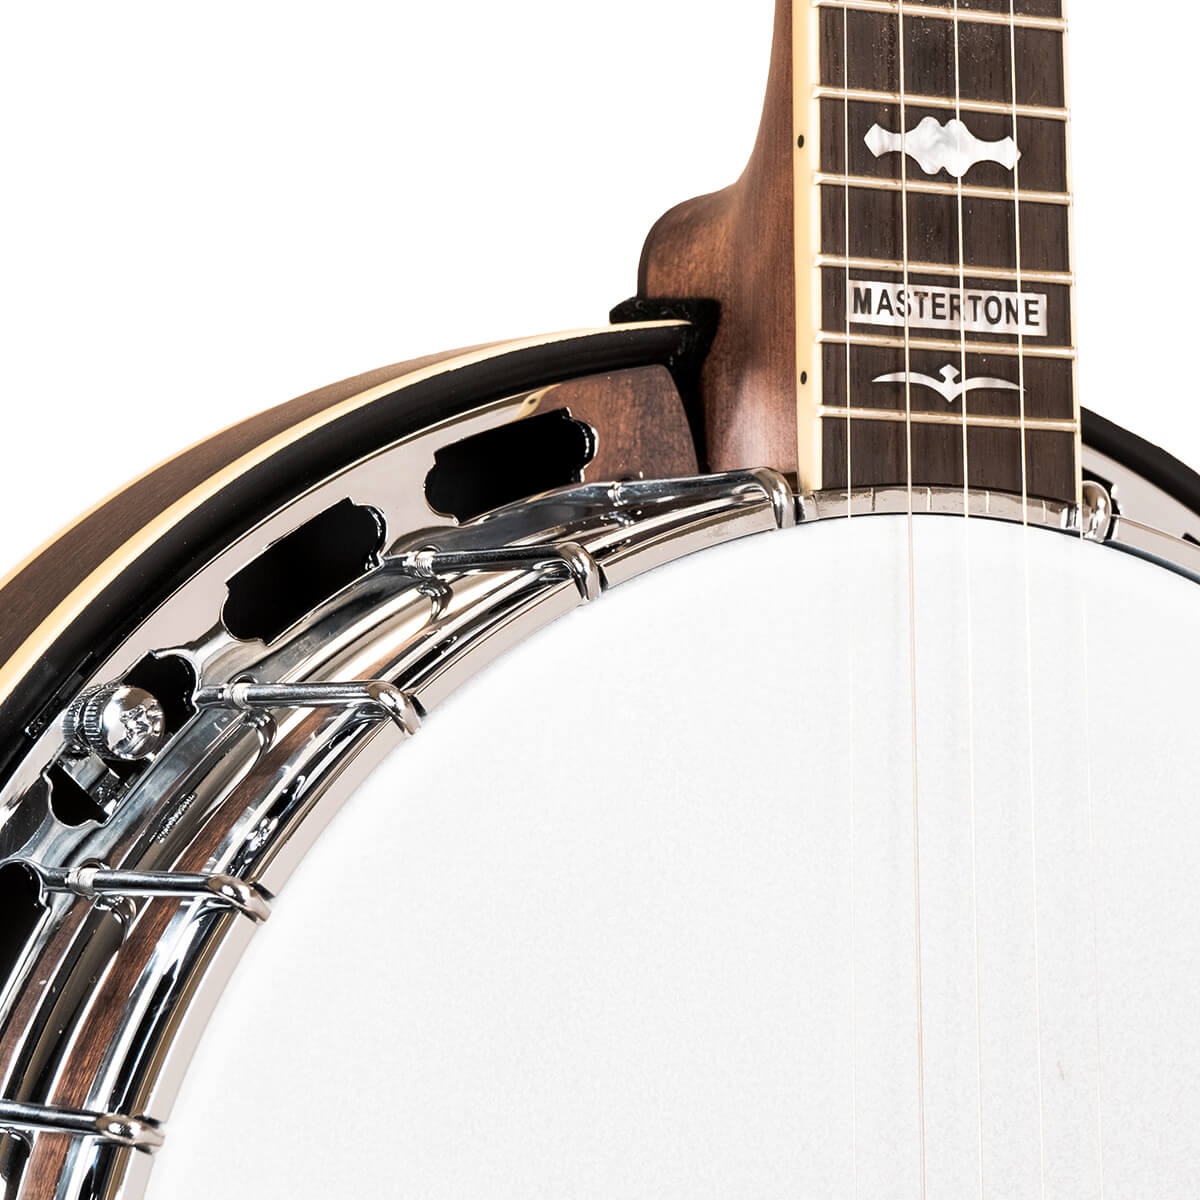 Gold Tone 5-String Orange Blossom Banjo